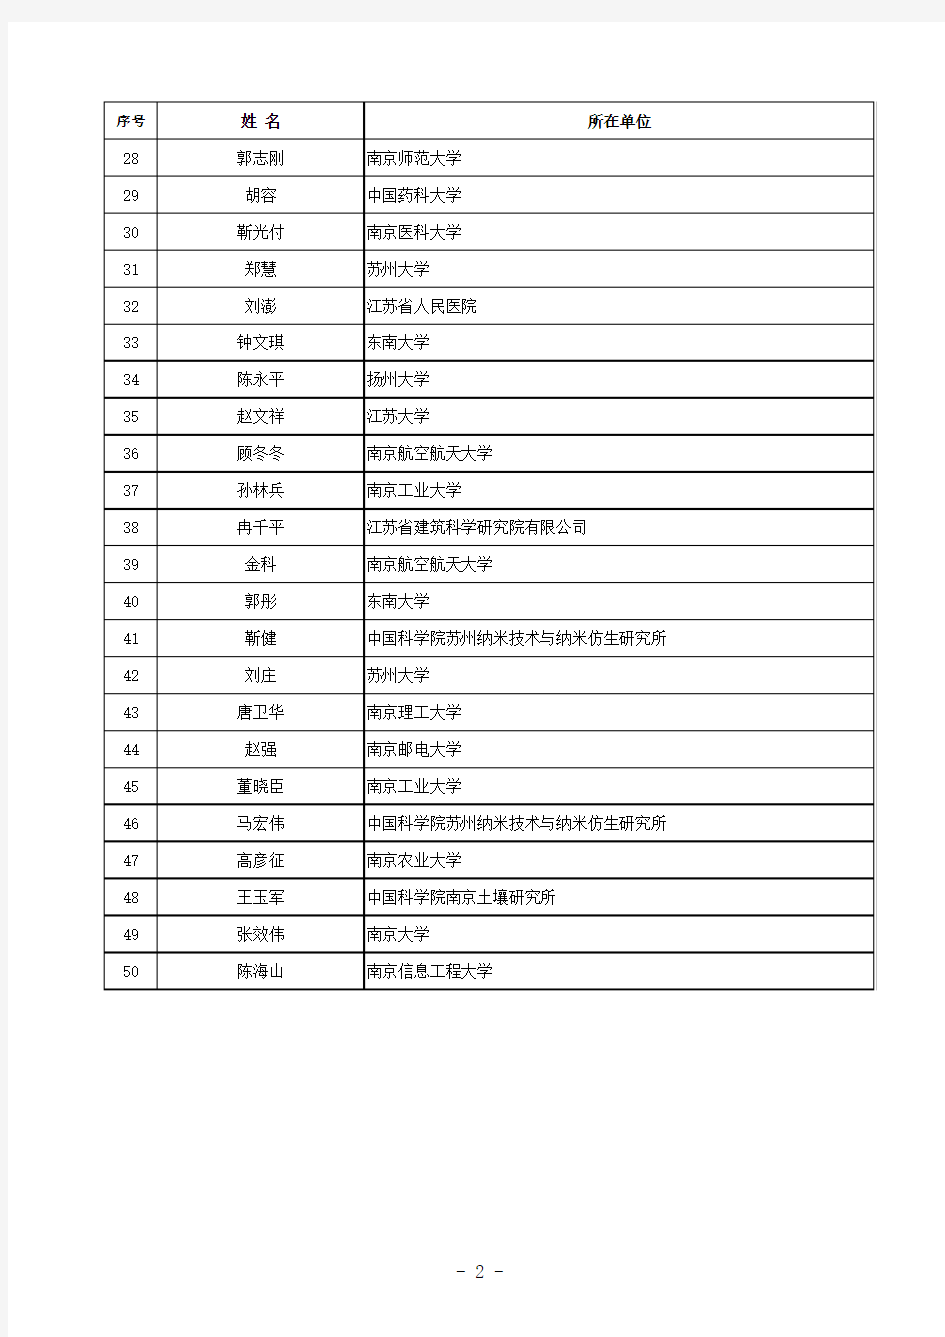 2013江苏省自然科学基金杰出青年基金获得者名单